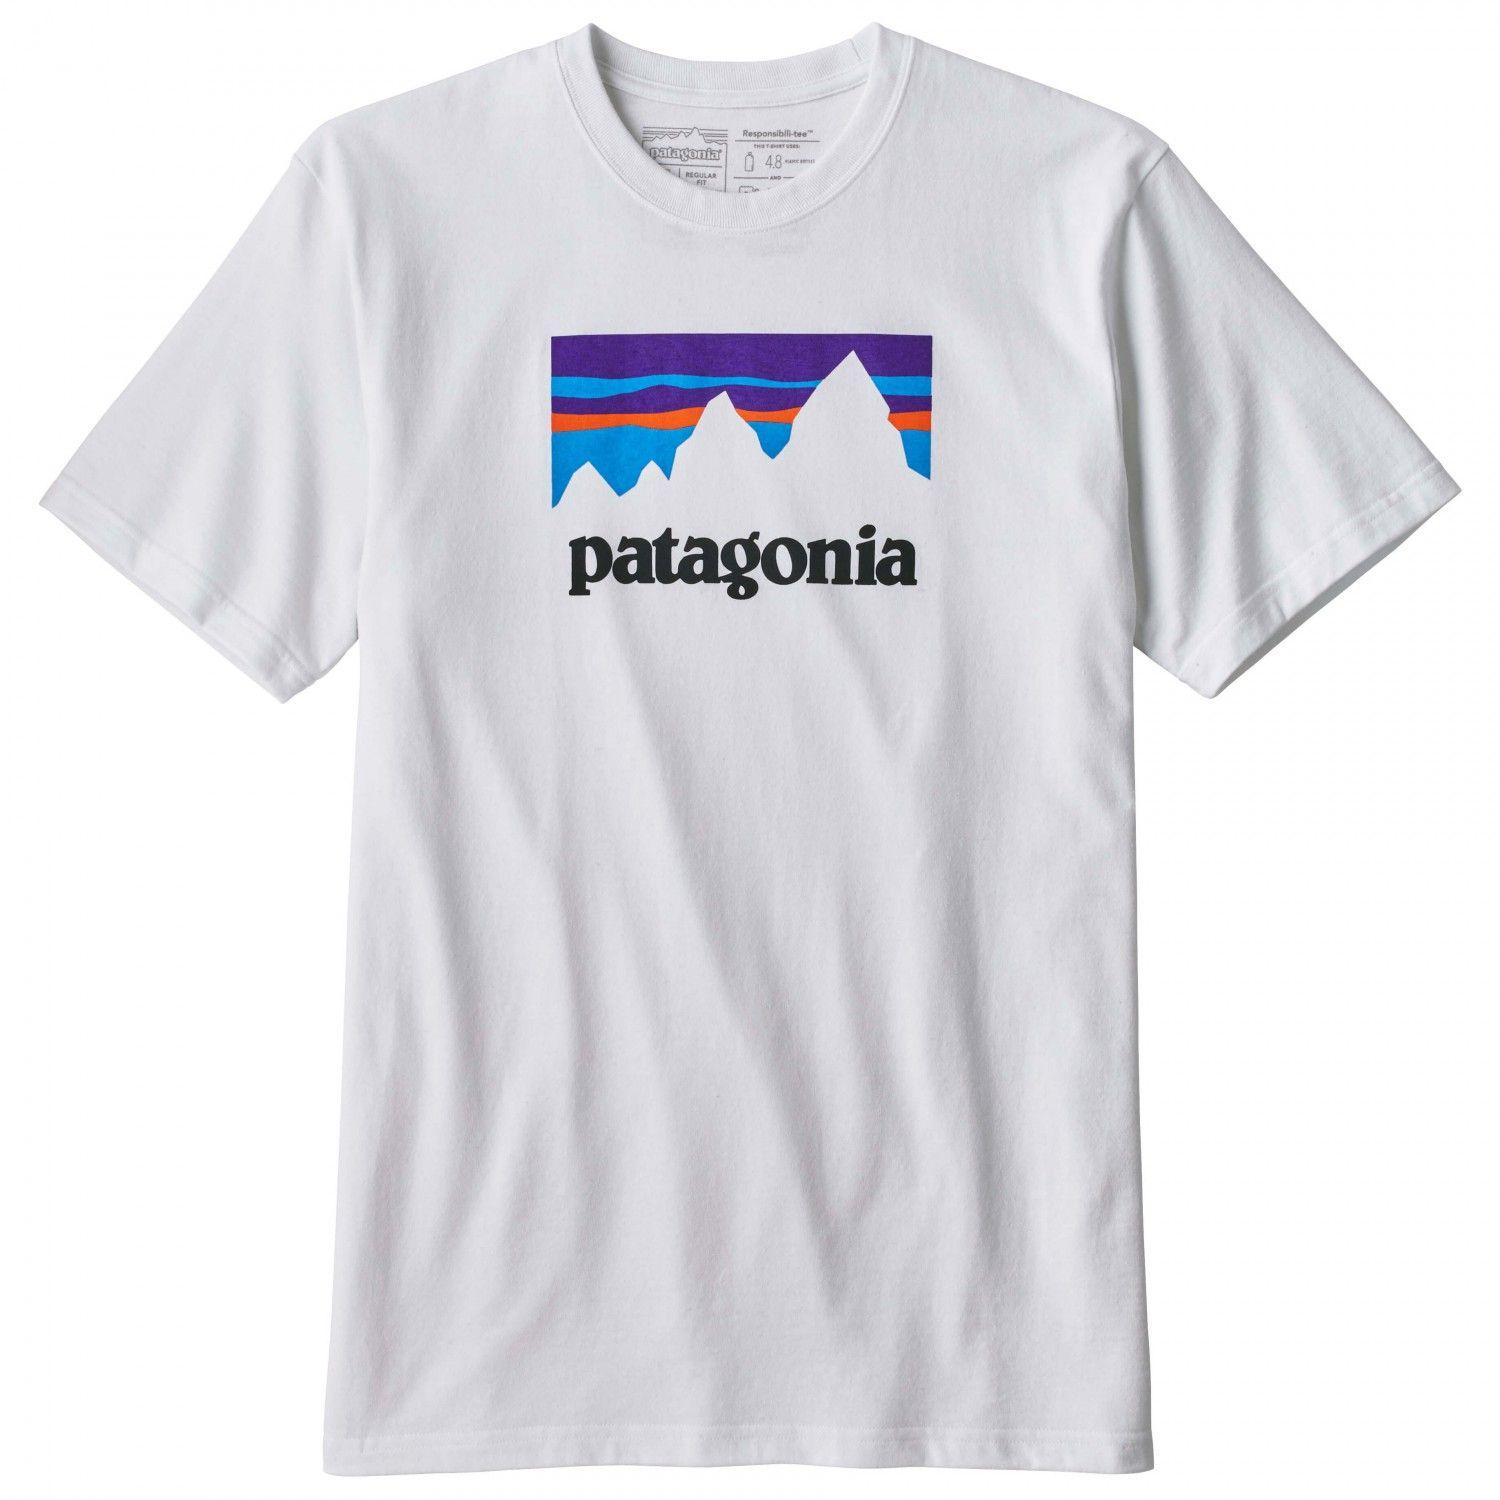 Patagonia Clothing Logo - Patagonia Shop Sticker Responsibili Tee Shirt Men's. Buy Online